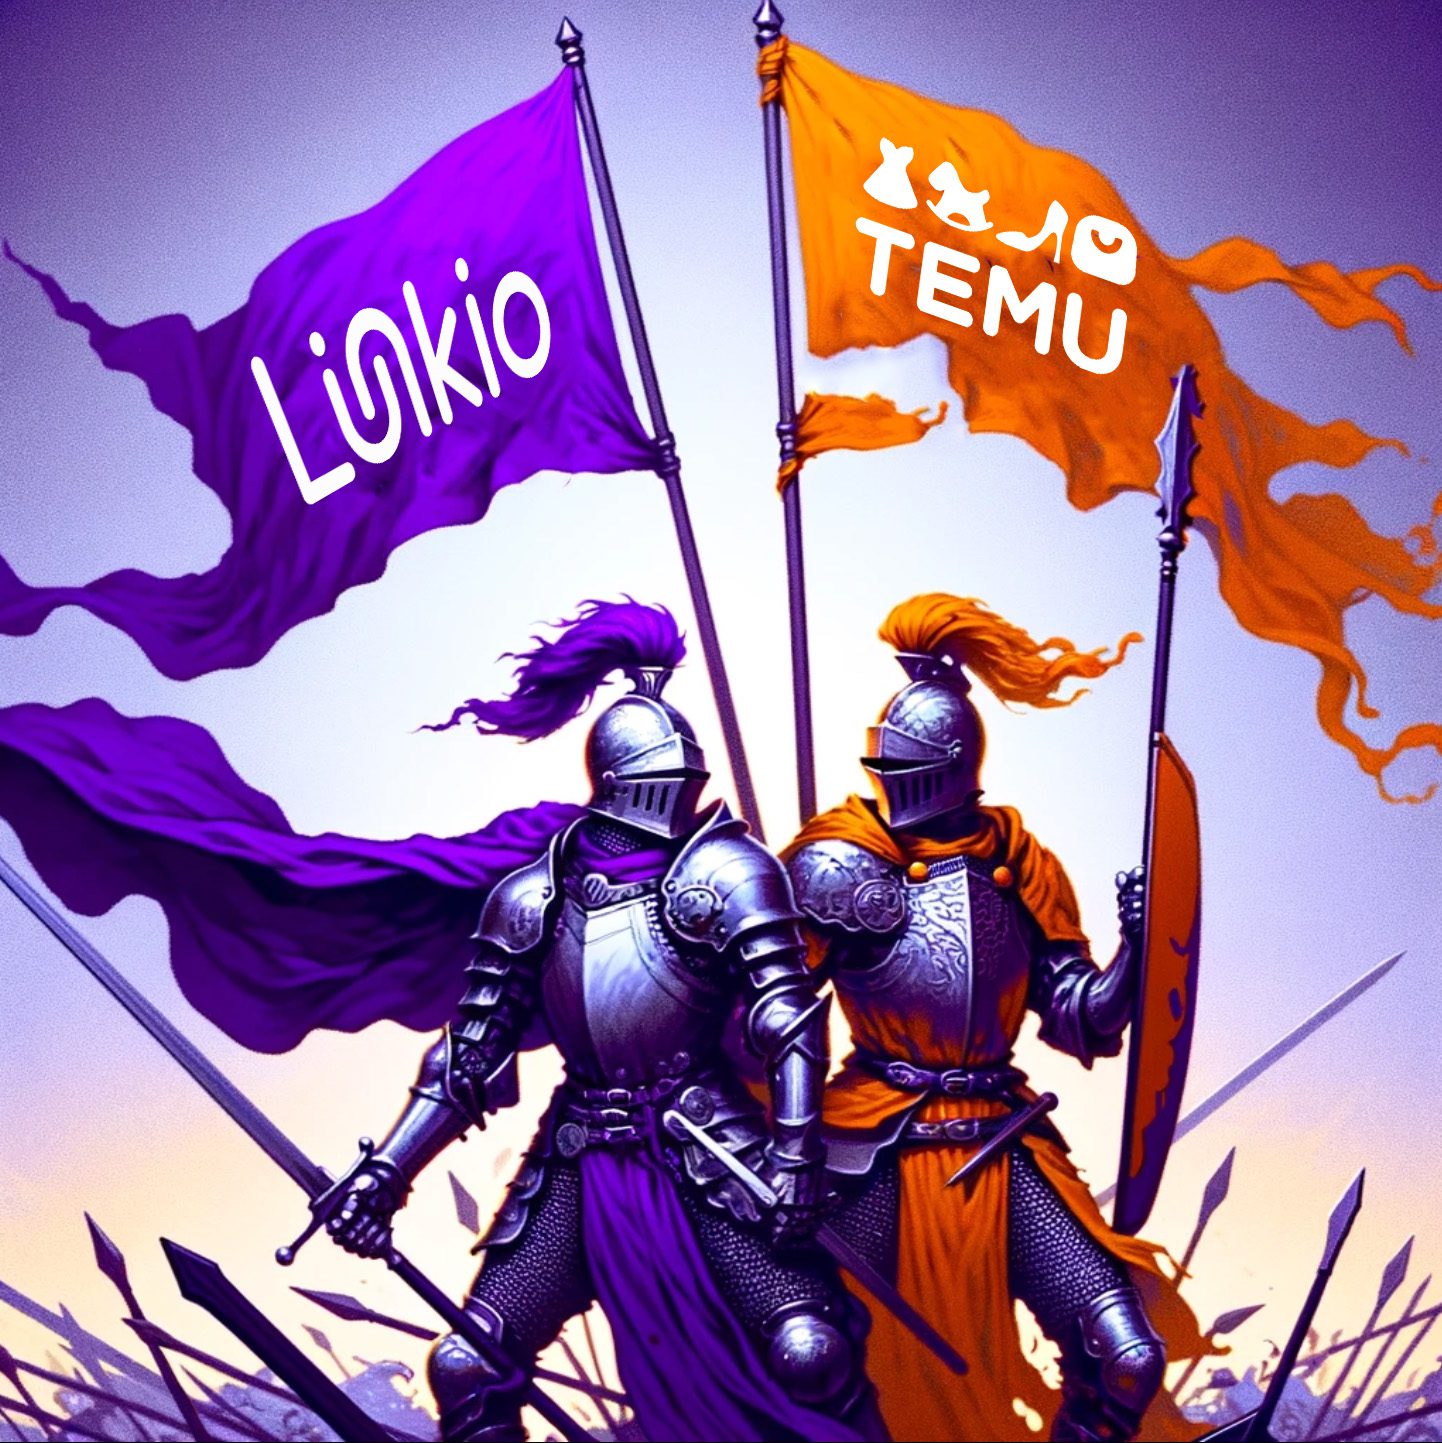 Fontos bejelentés! A Linkio is beleáll a Temu elleni harcba Mutatjuk hogyan vedd fel vele a harcot